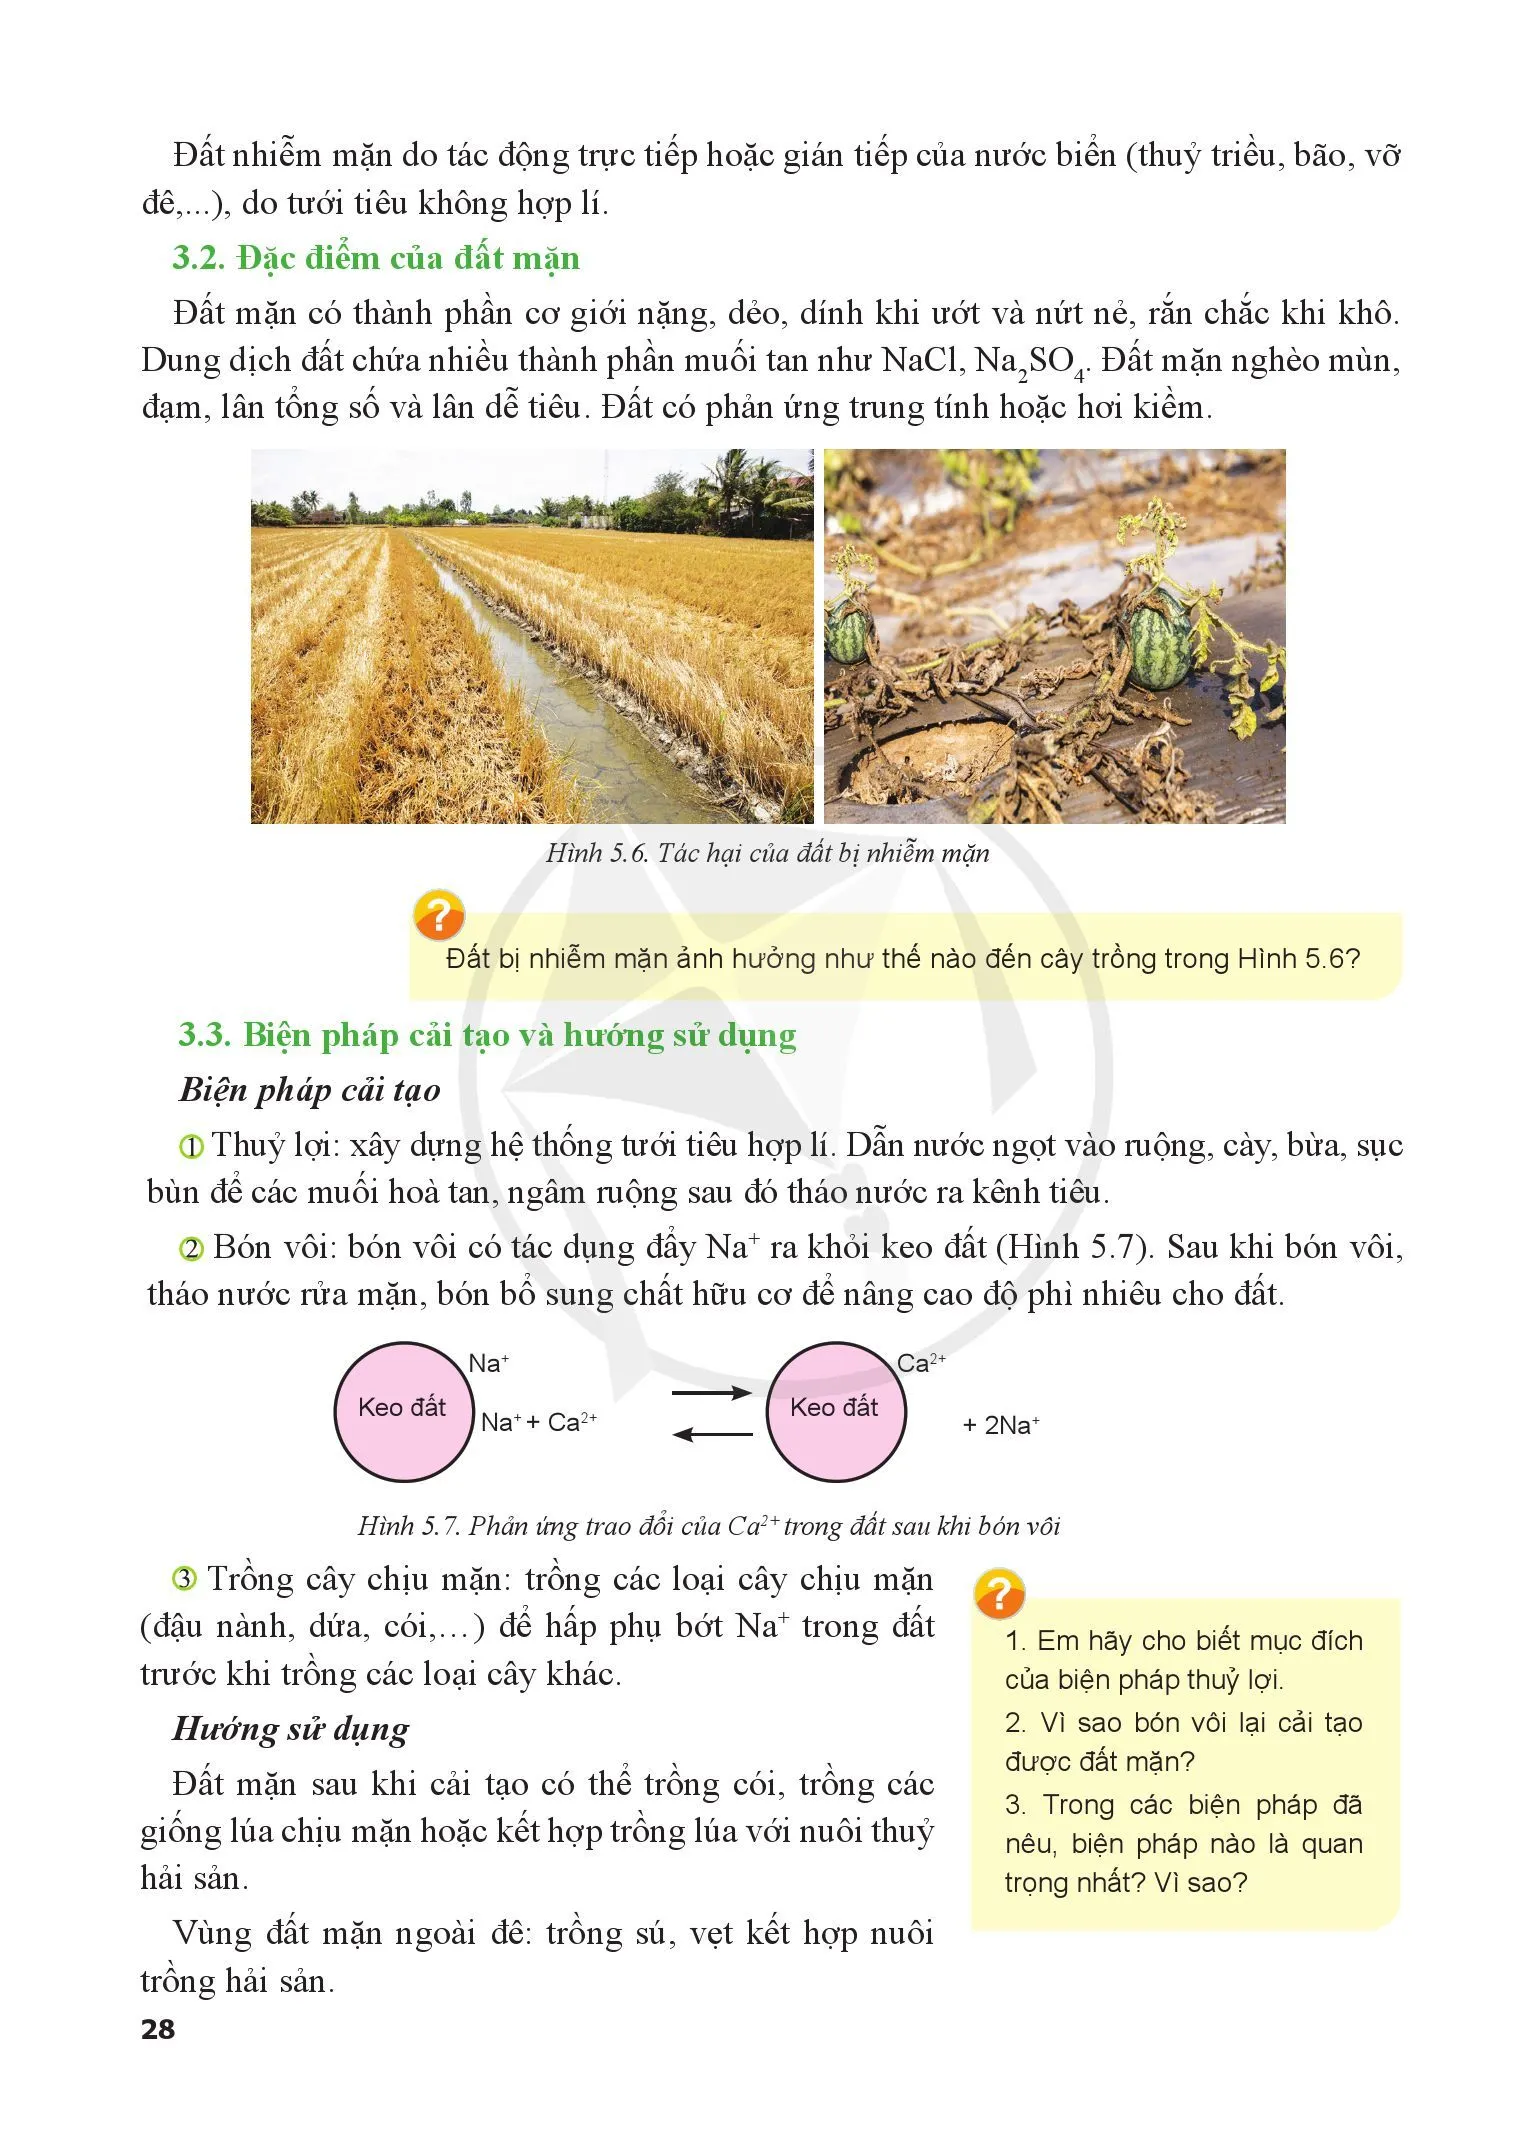 Bài 5. Biện pháp cải tạo, sử dụng và bảo vệ đất trồng